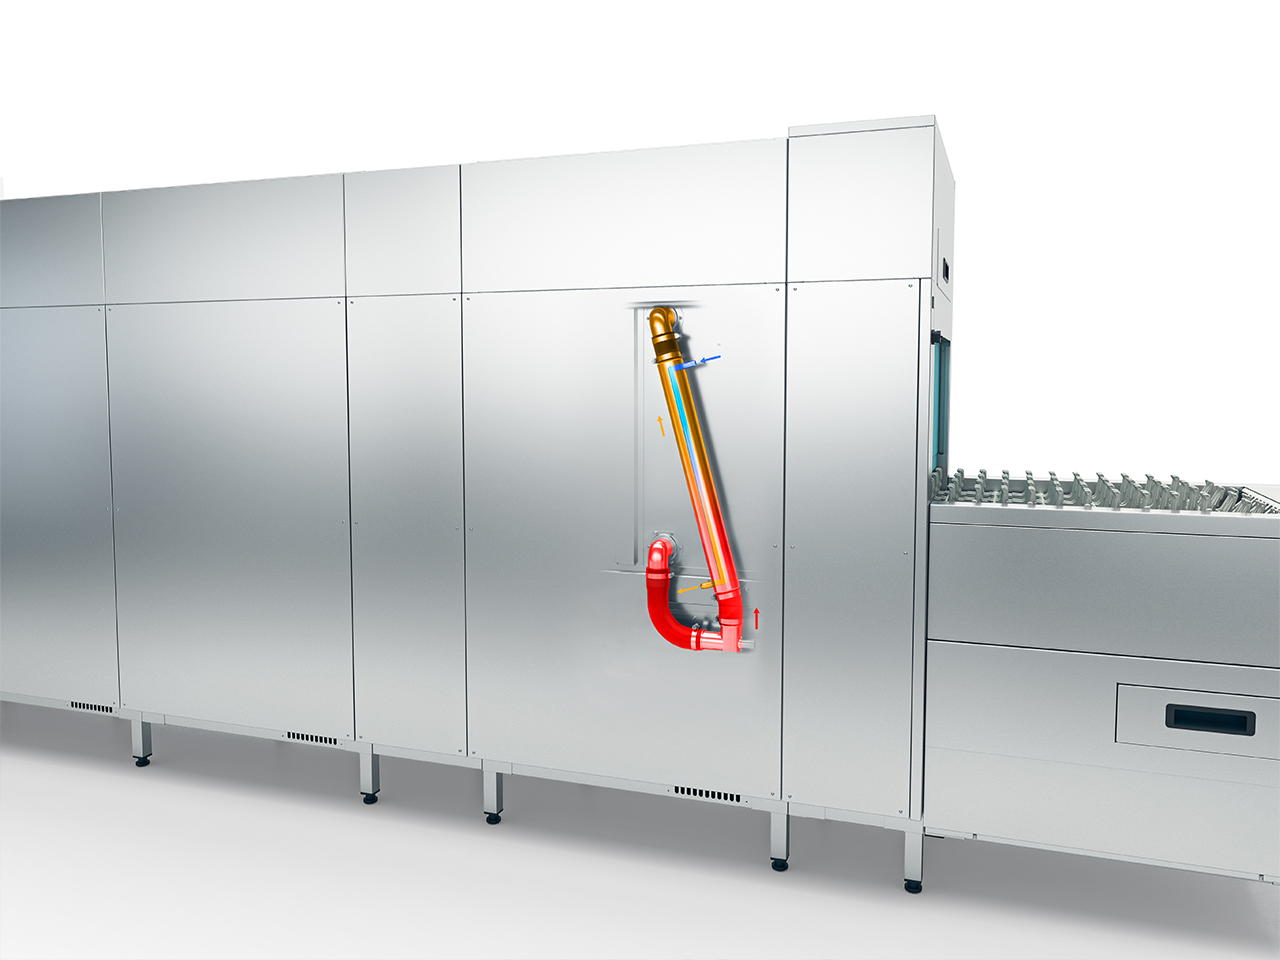 Transportni pomivalni stroji serije MTF Winterhalter – toplotni izmenjevalnik cone predpomivanja